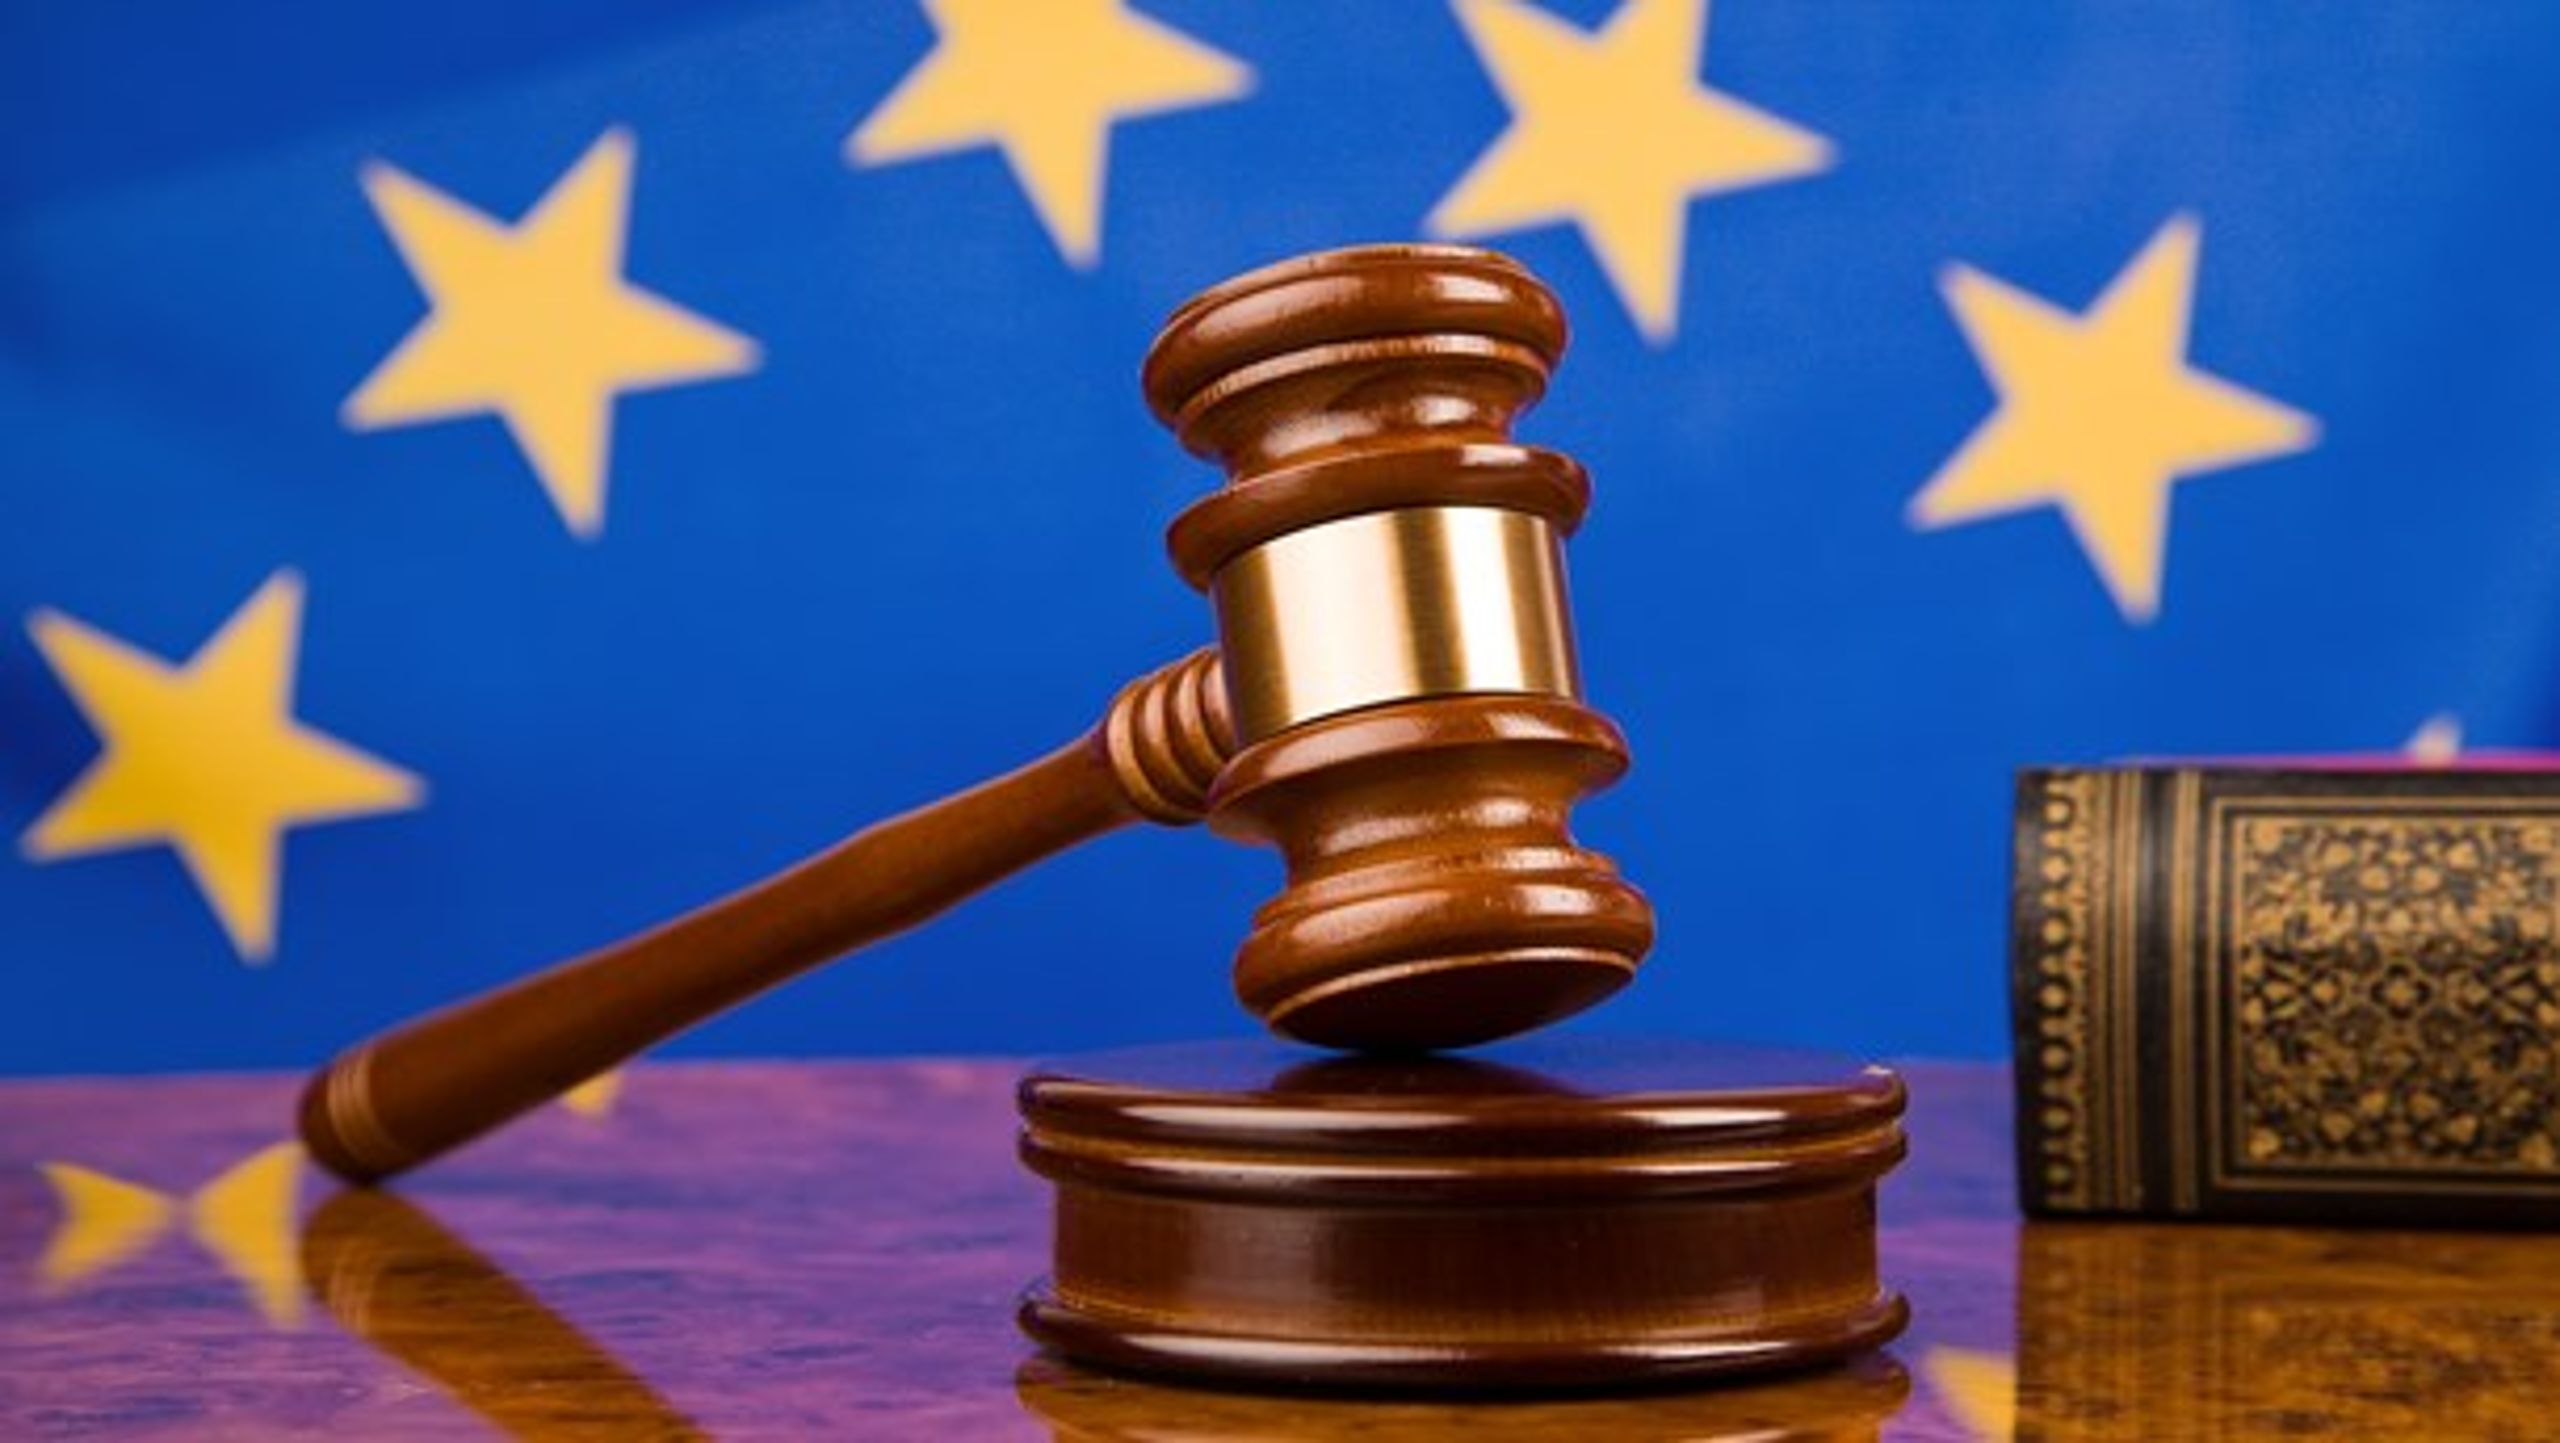 De nye sager kan gå hele vejen til EU-Domstolen.